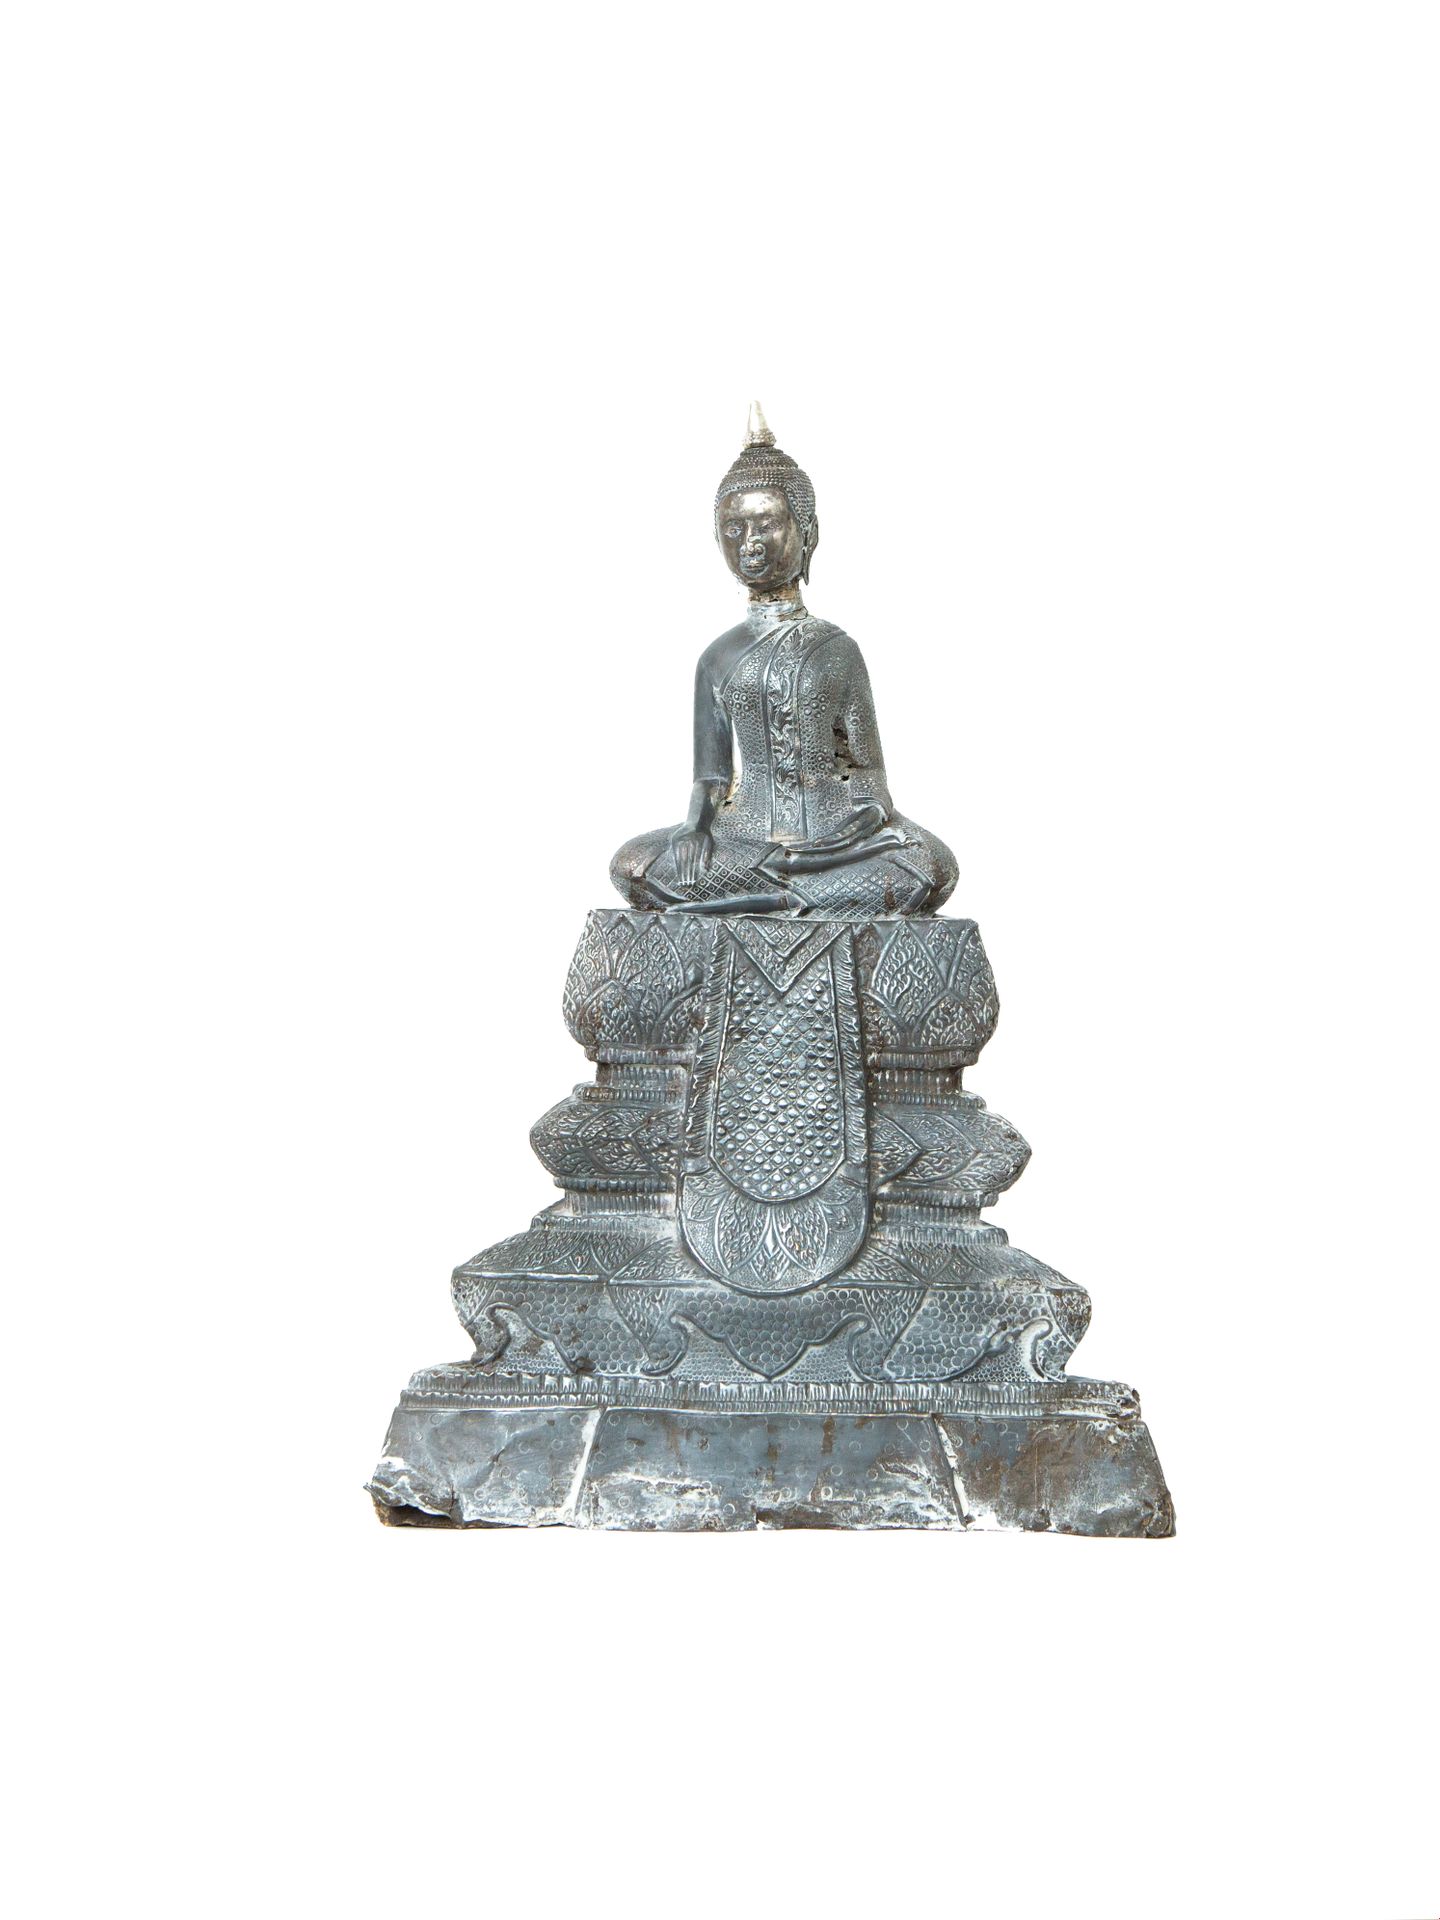 Null 柬埔寨或泰国，19世纪

银质浮雕佛像，以padmasana坐于高基座上，基座上有三层刻满莲花花瓣的楣，右手持菩提心，左手持禅定心，身着刻有丰富图案的&hellip;